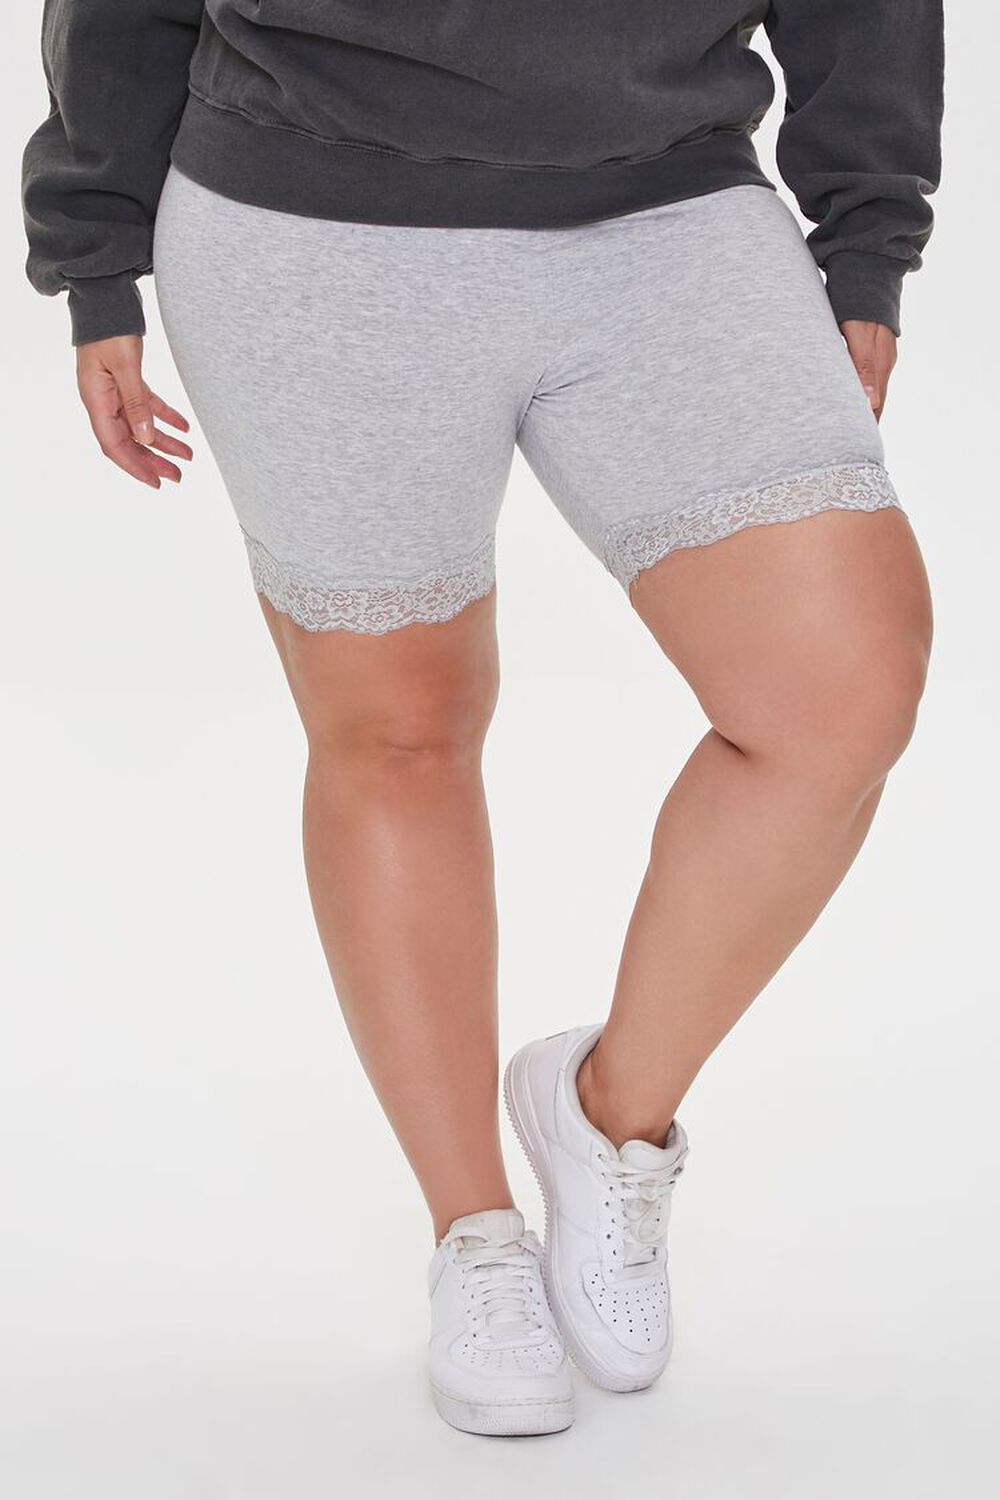 HEATHER GREY Plus Size Lace-Trim Biker Shorts, image 2